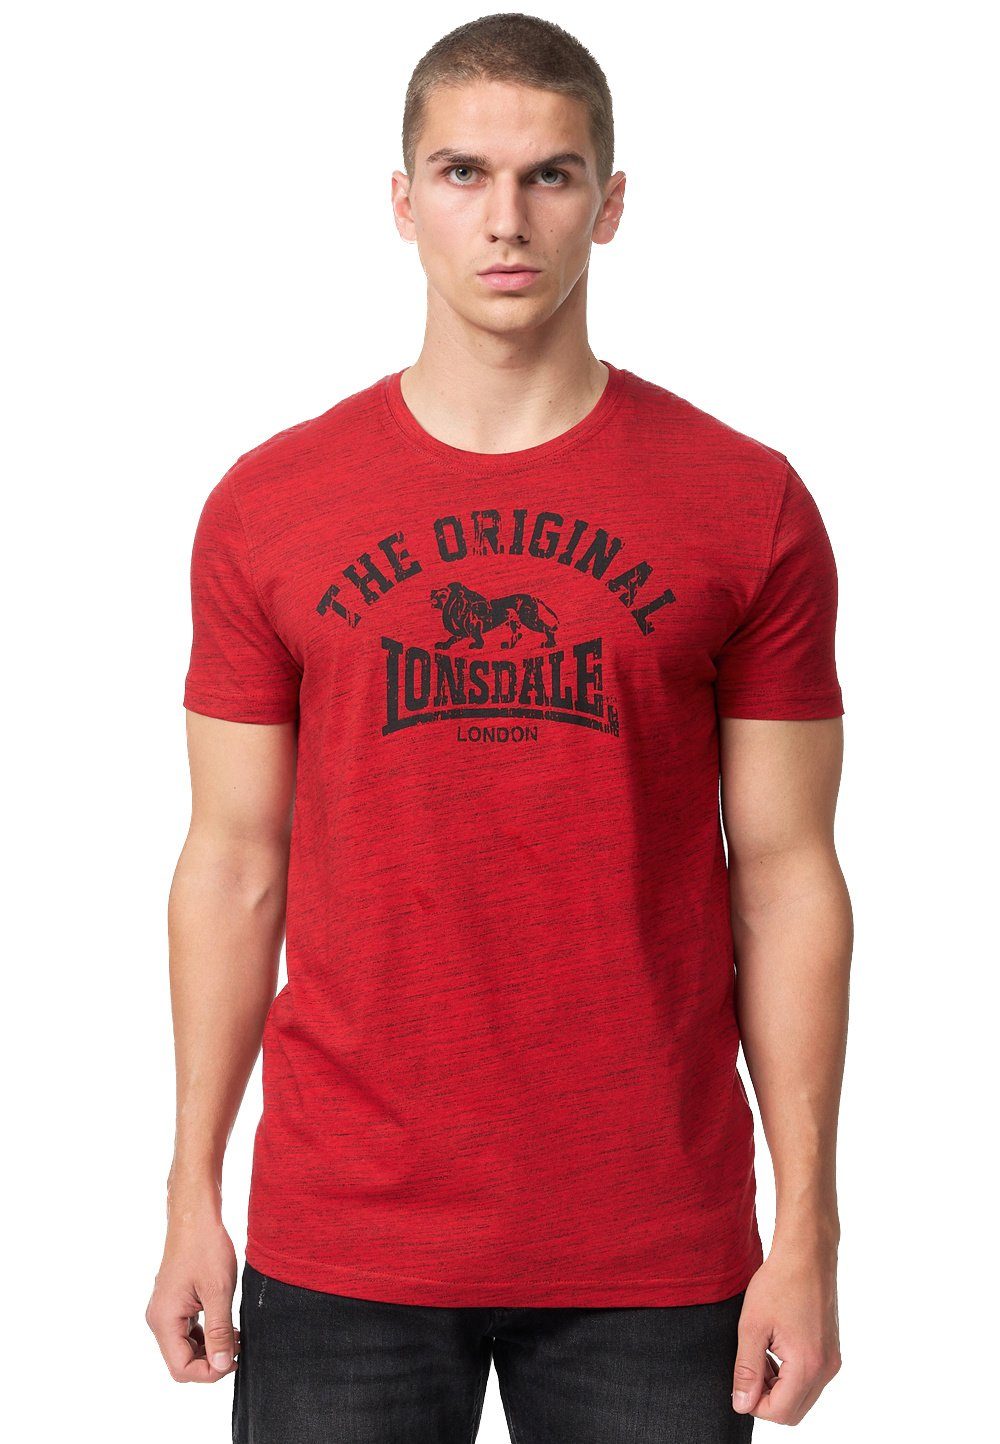 Lonsdale T-Shirt Lonsdale Adult Original red/black T-Shirt Herren marl